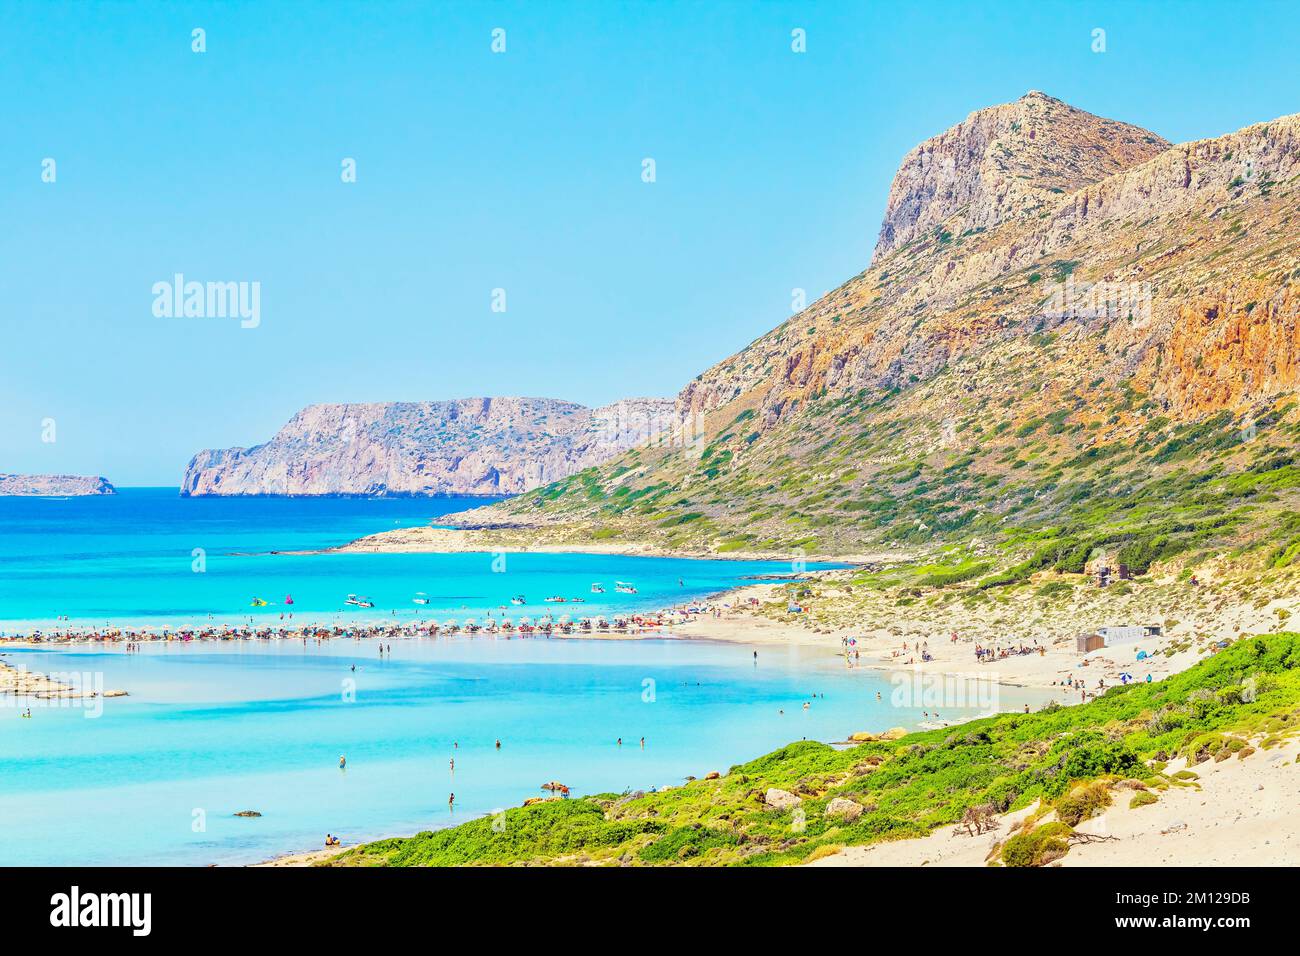 Balos bay, Gramvousa Peninsula, Chania, Crete, Greece Stock Photo